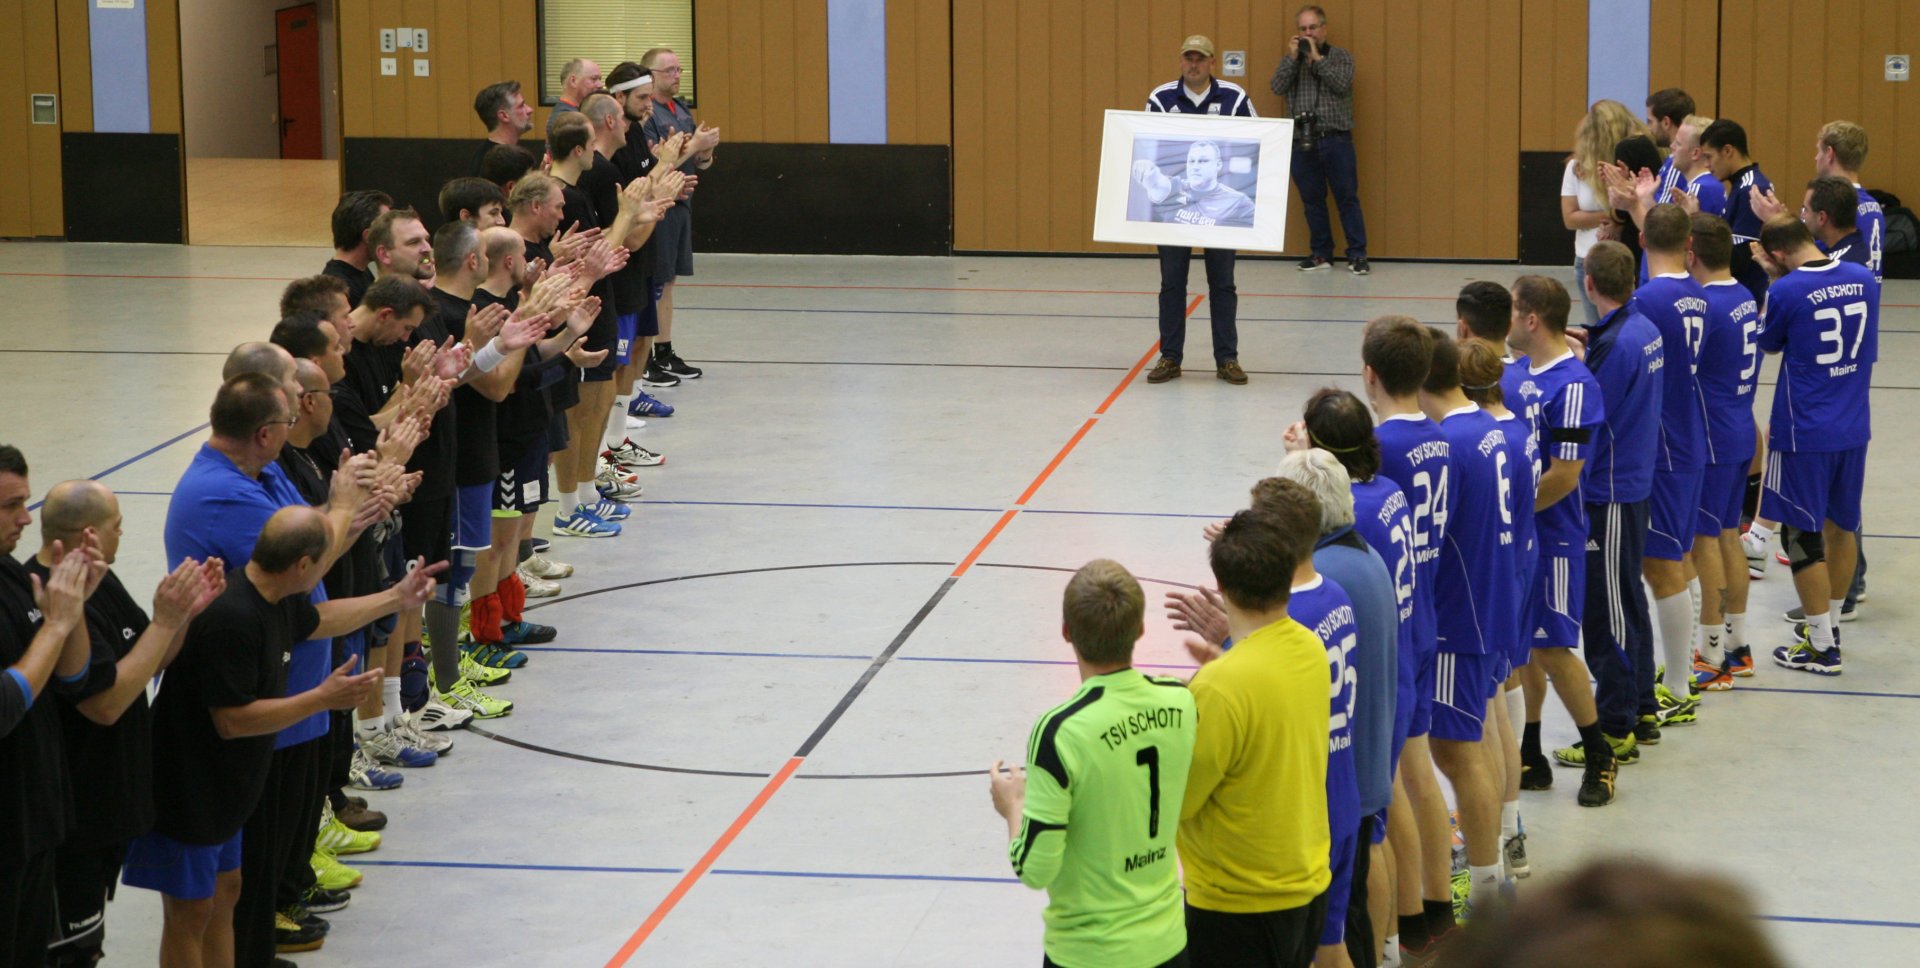 Minutenlange Ehrerbietung für einen großen Handballer: Nach dem Spiel standen die Teams vor einem Bild Christian Bauers Spalier und applaudierten ihm während eines Abschiedsliedes.